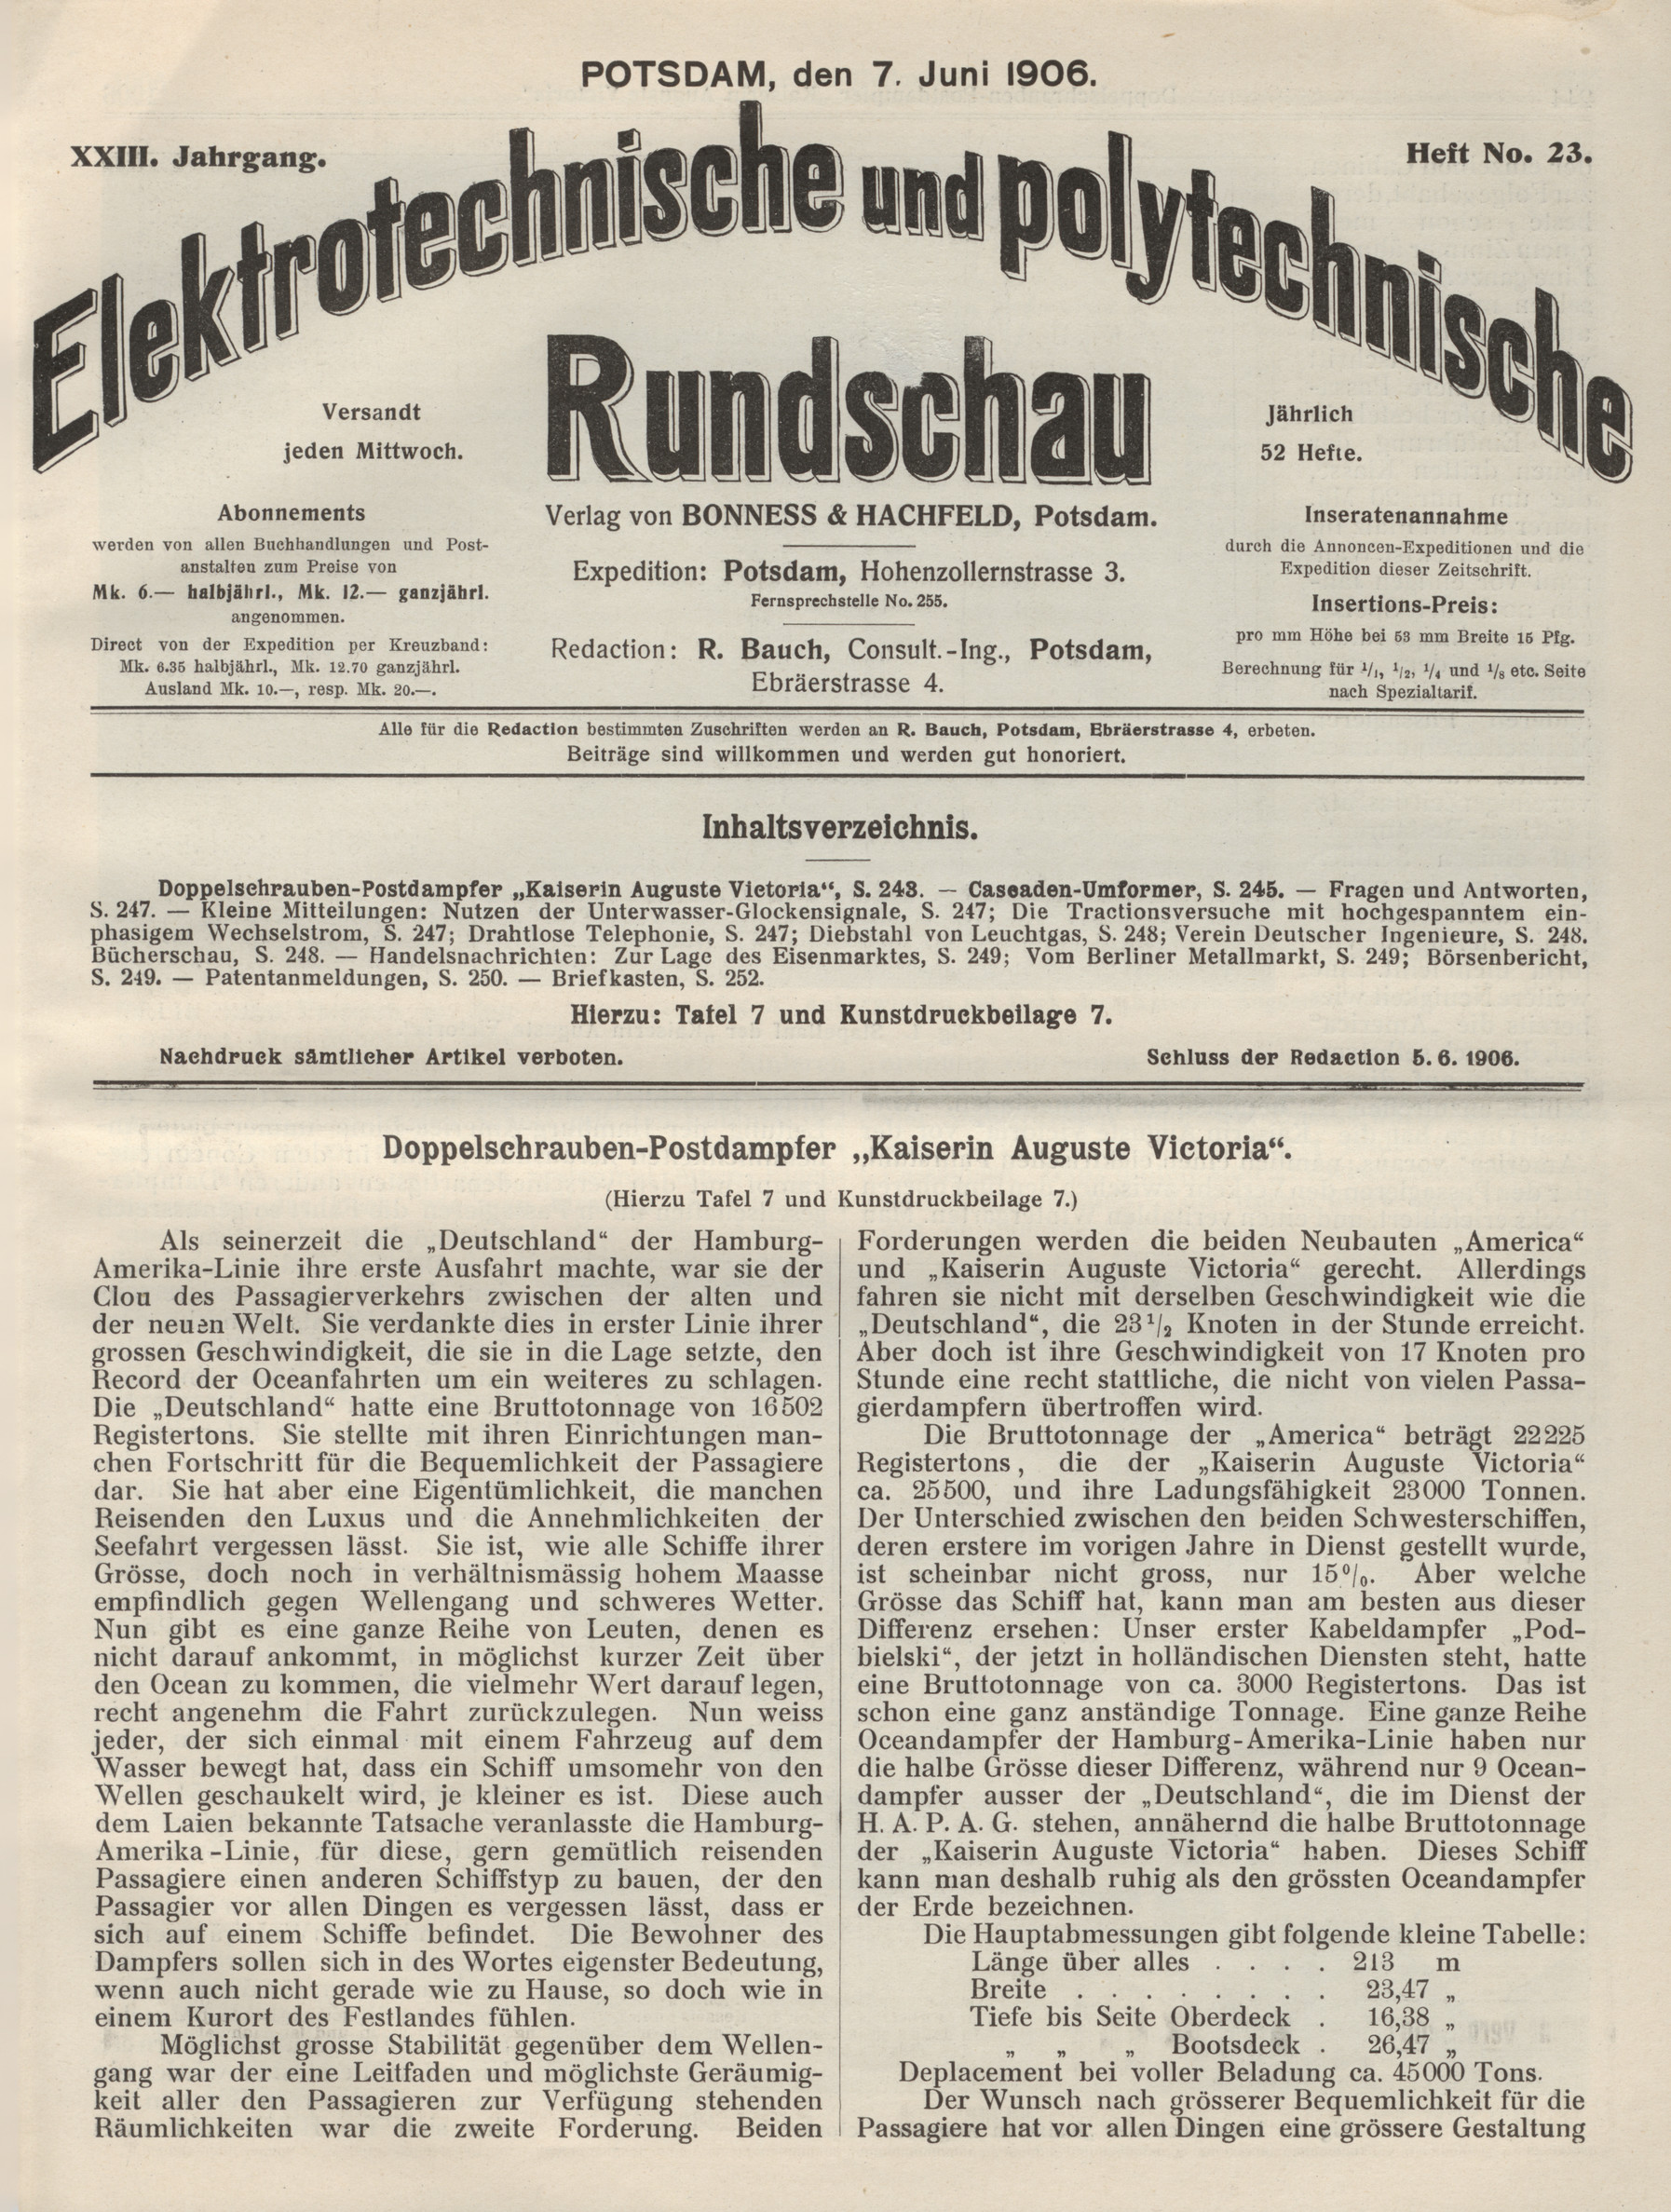 Elektrotechnische und polytechnische Rundschau, XXIII. Jahrgang, Heft No. 23